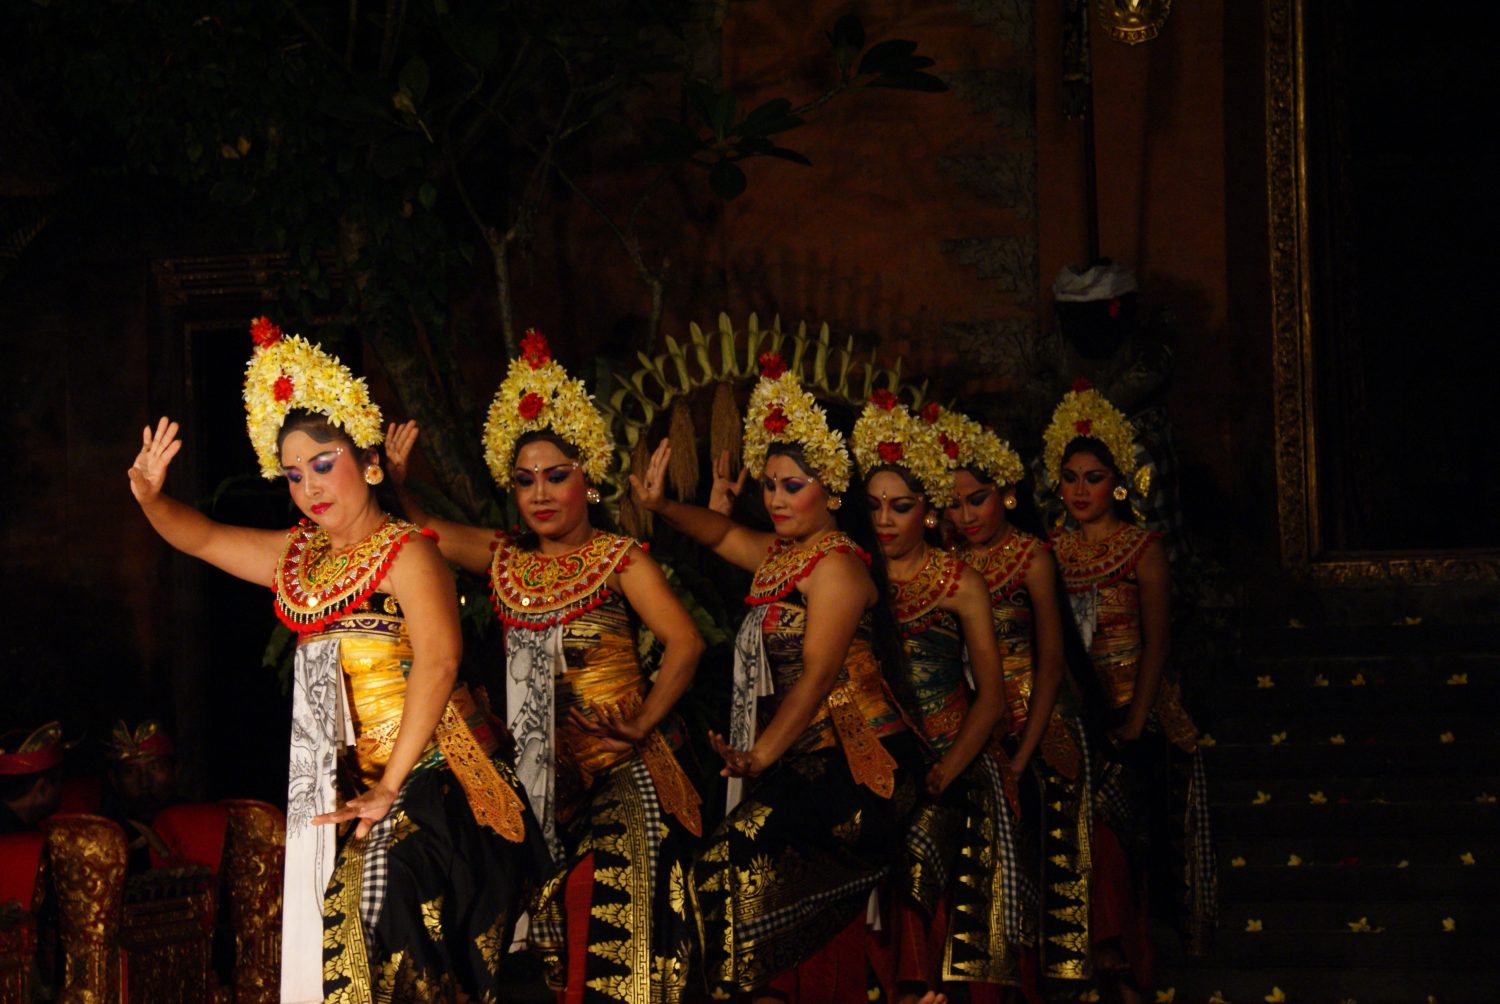 Balinese dancing in Ubud #indonesia #bali